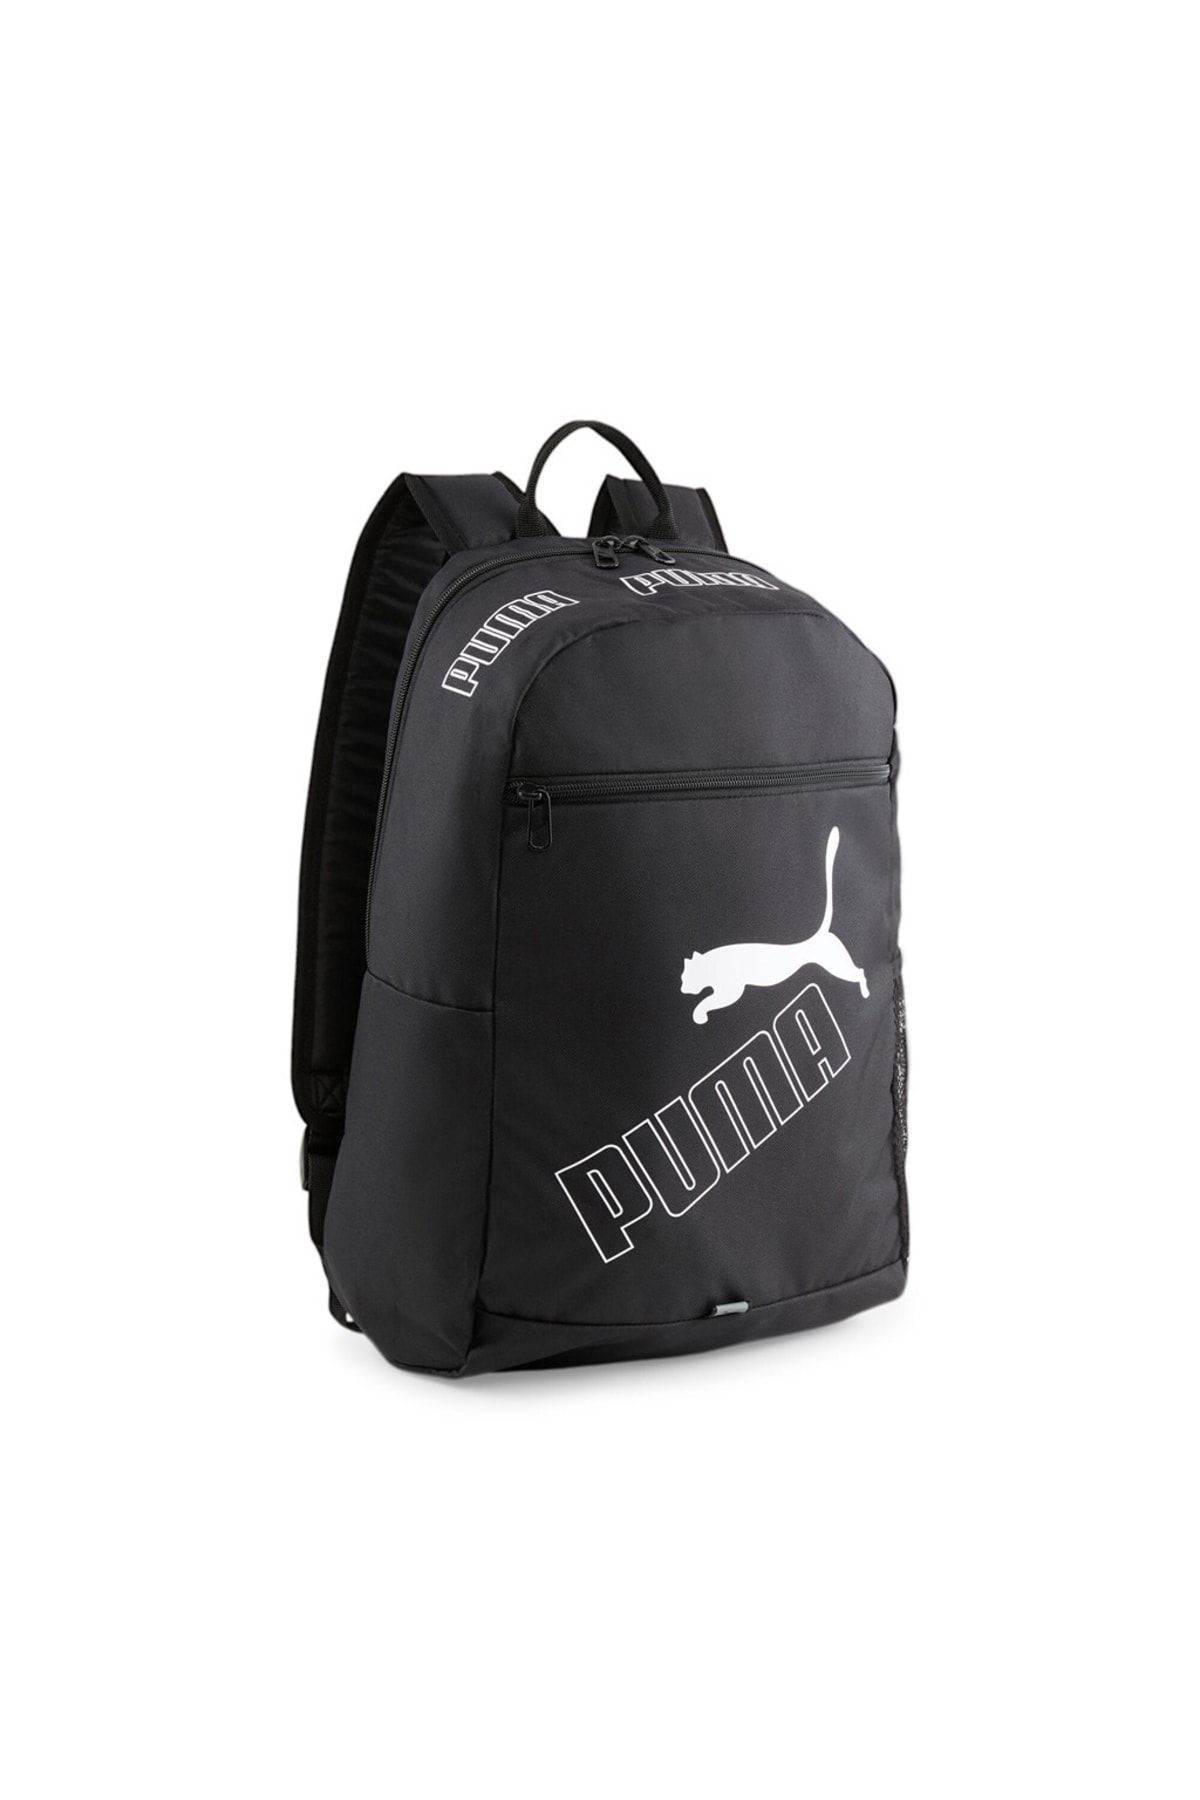 Puma Phase Backpack II07995201